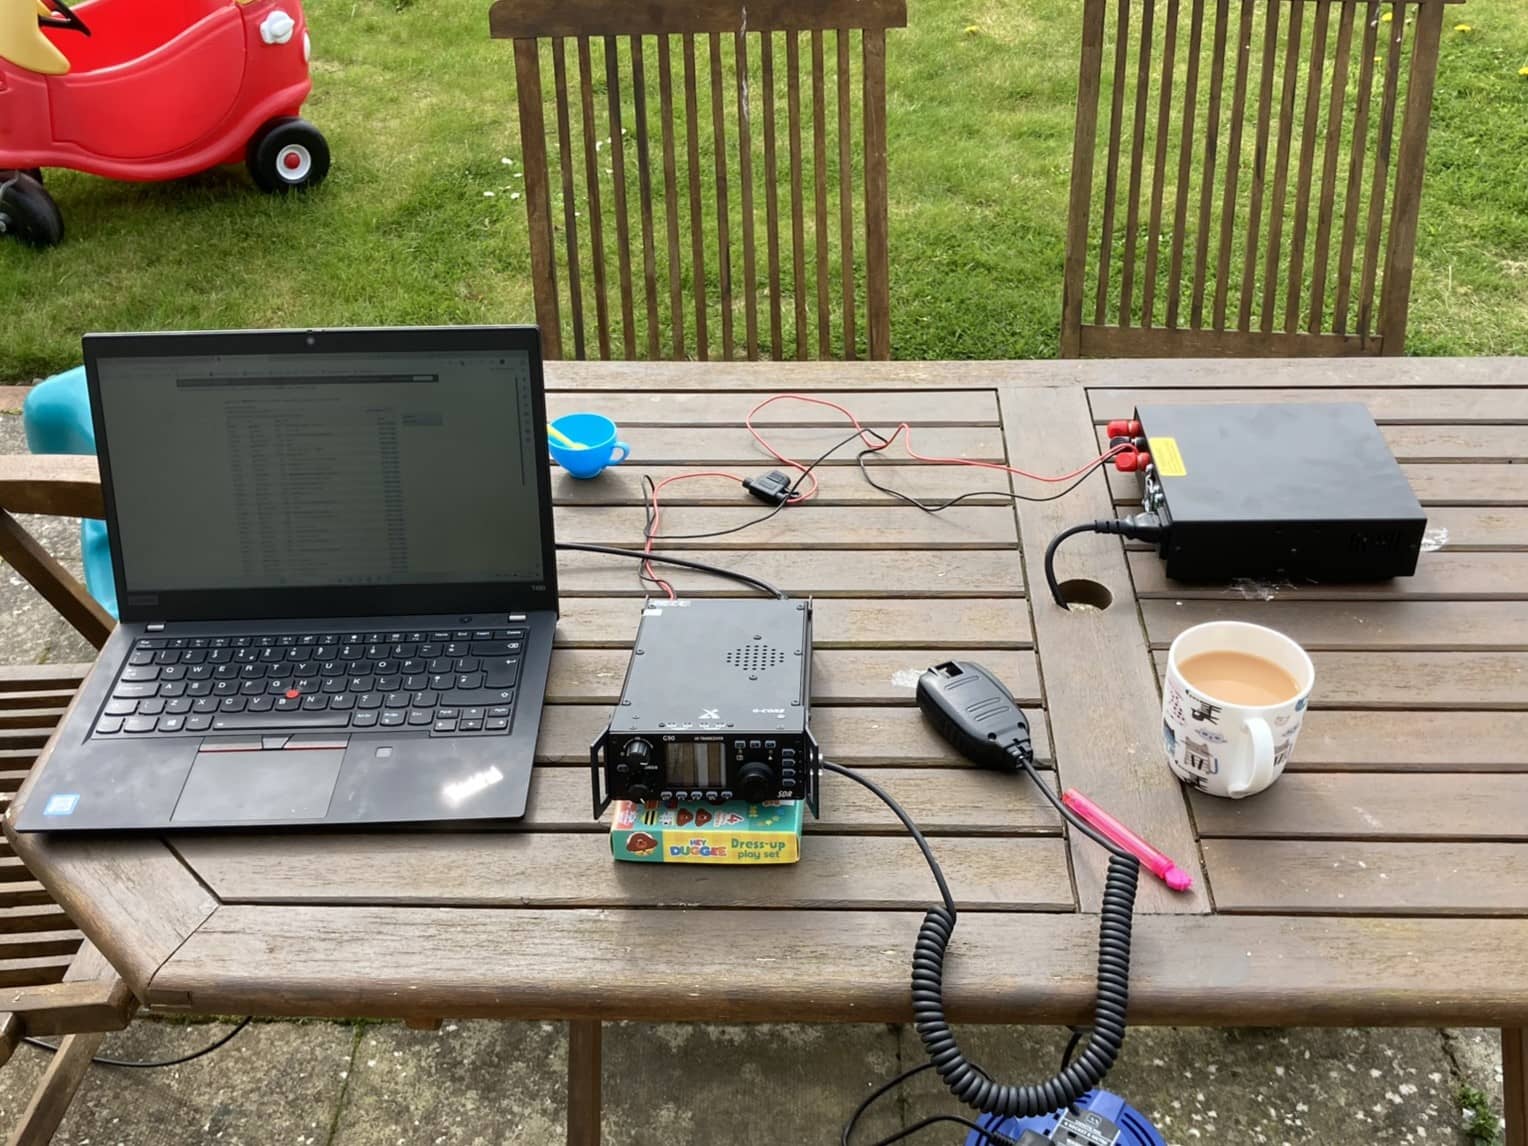 Radio setup outside